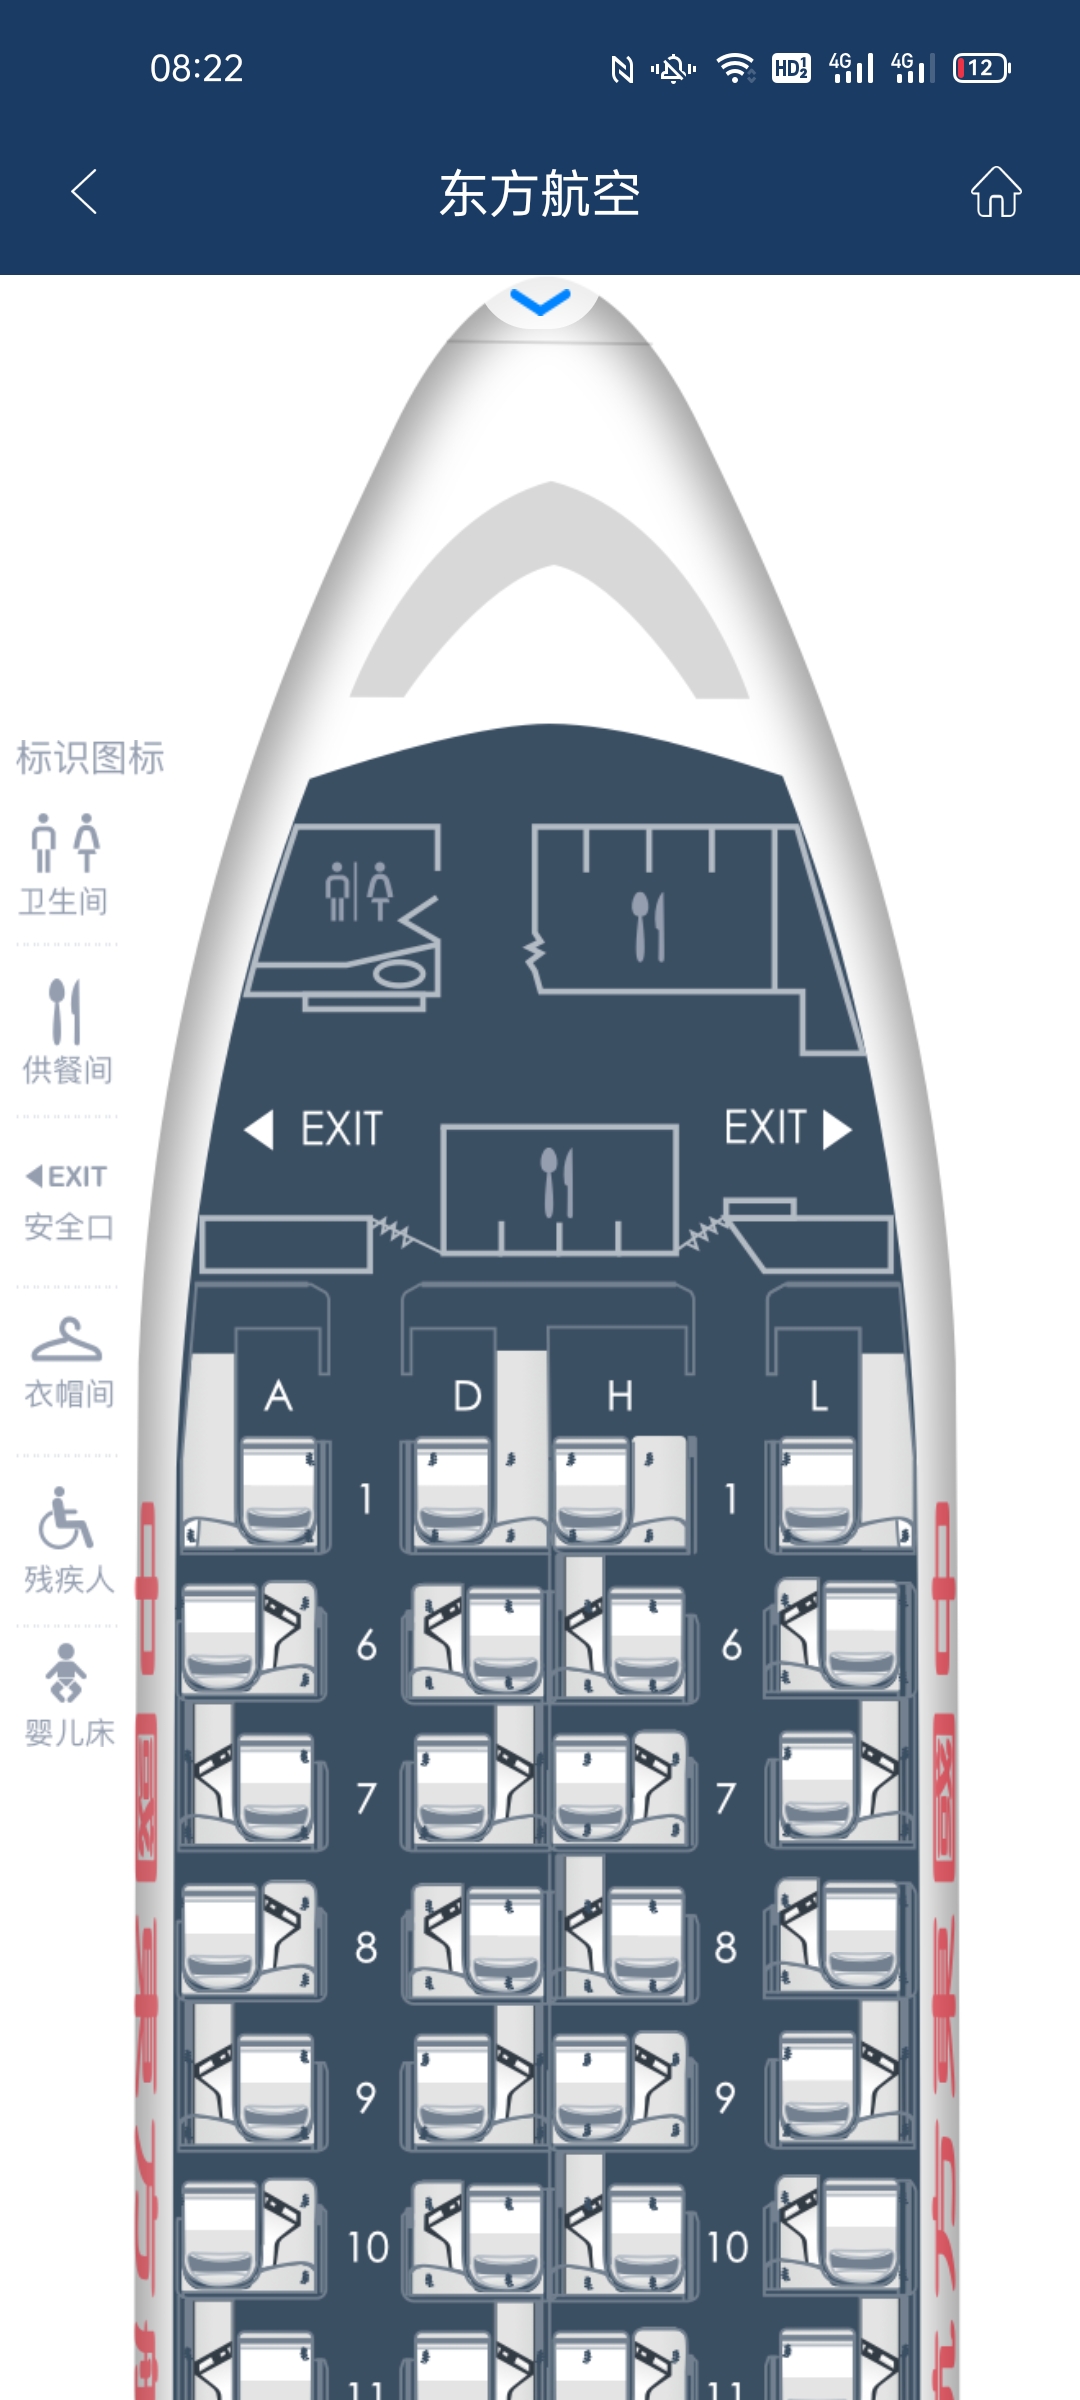 川航空客320公务舱图片-图库-五毛网